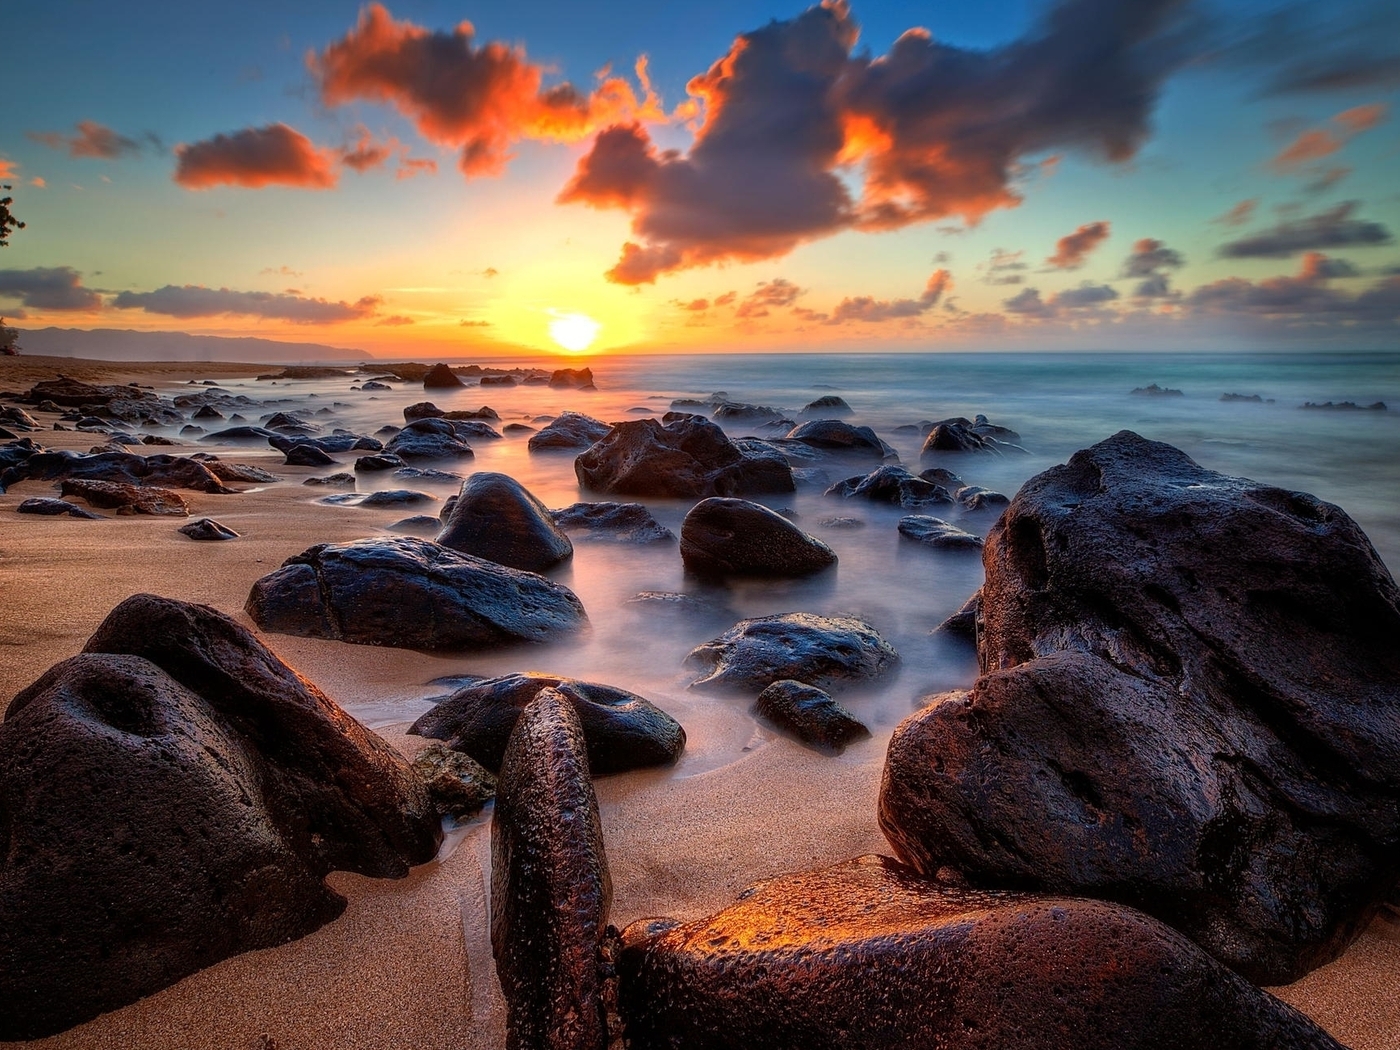 Image: Clouds, sunset, sun, sea, coast, stones, sand, beach